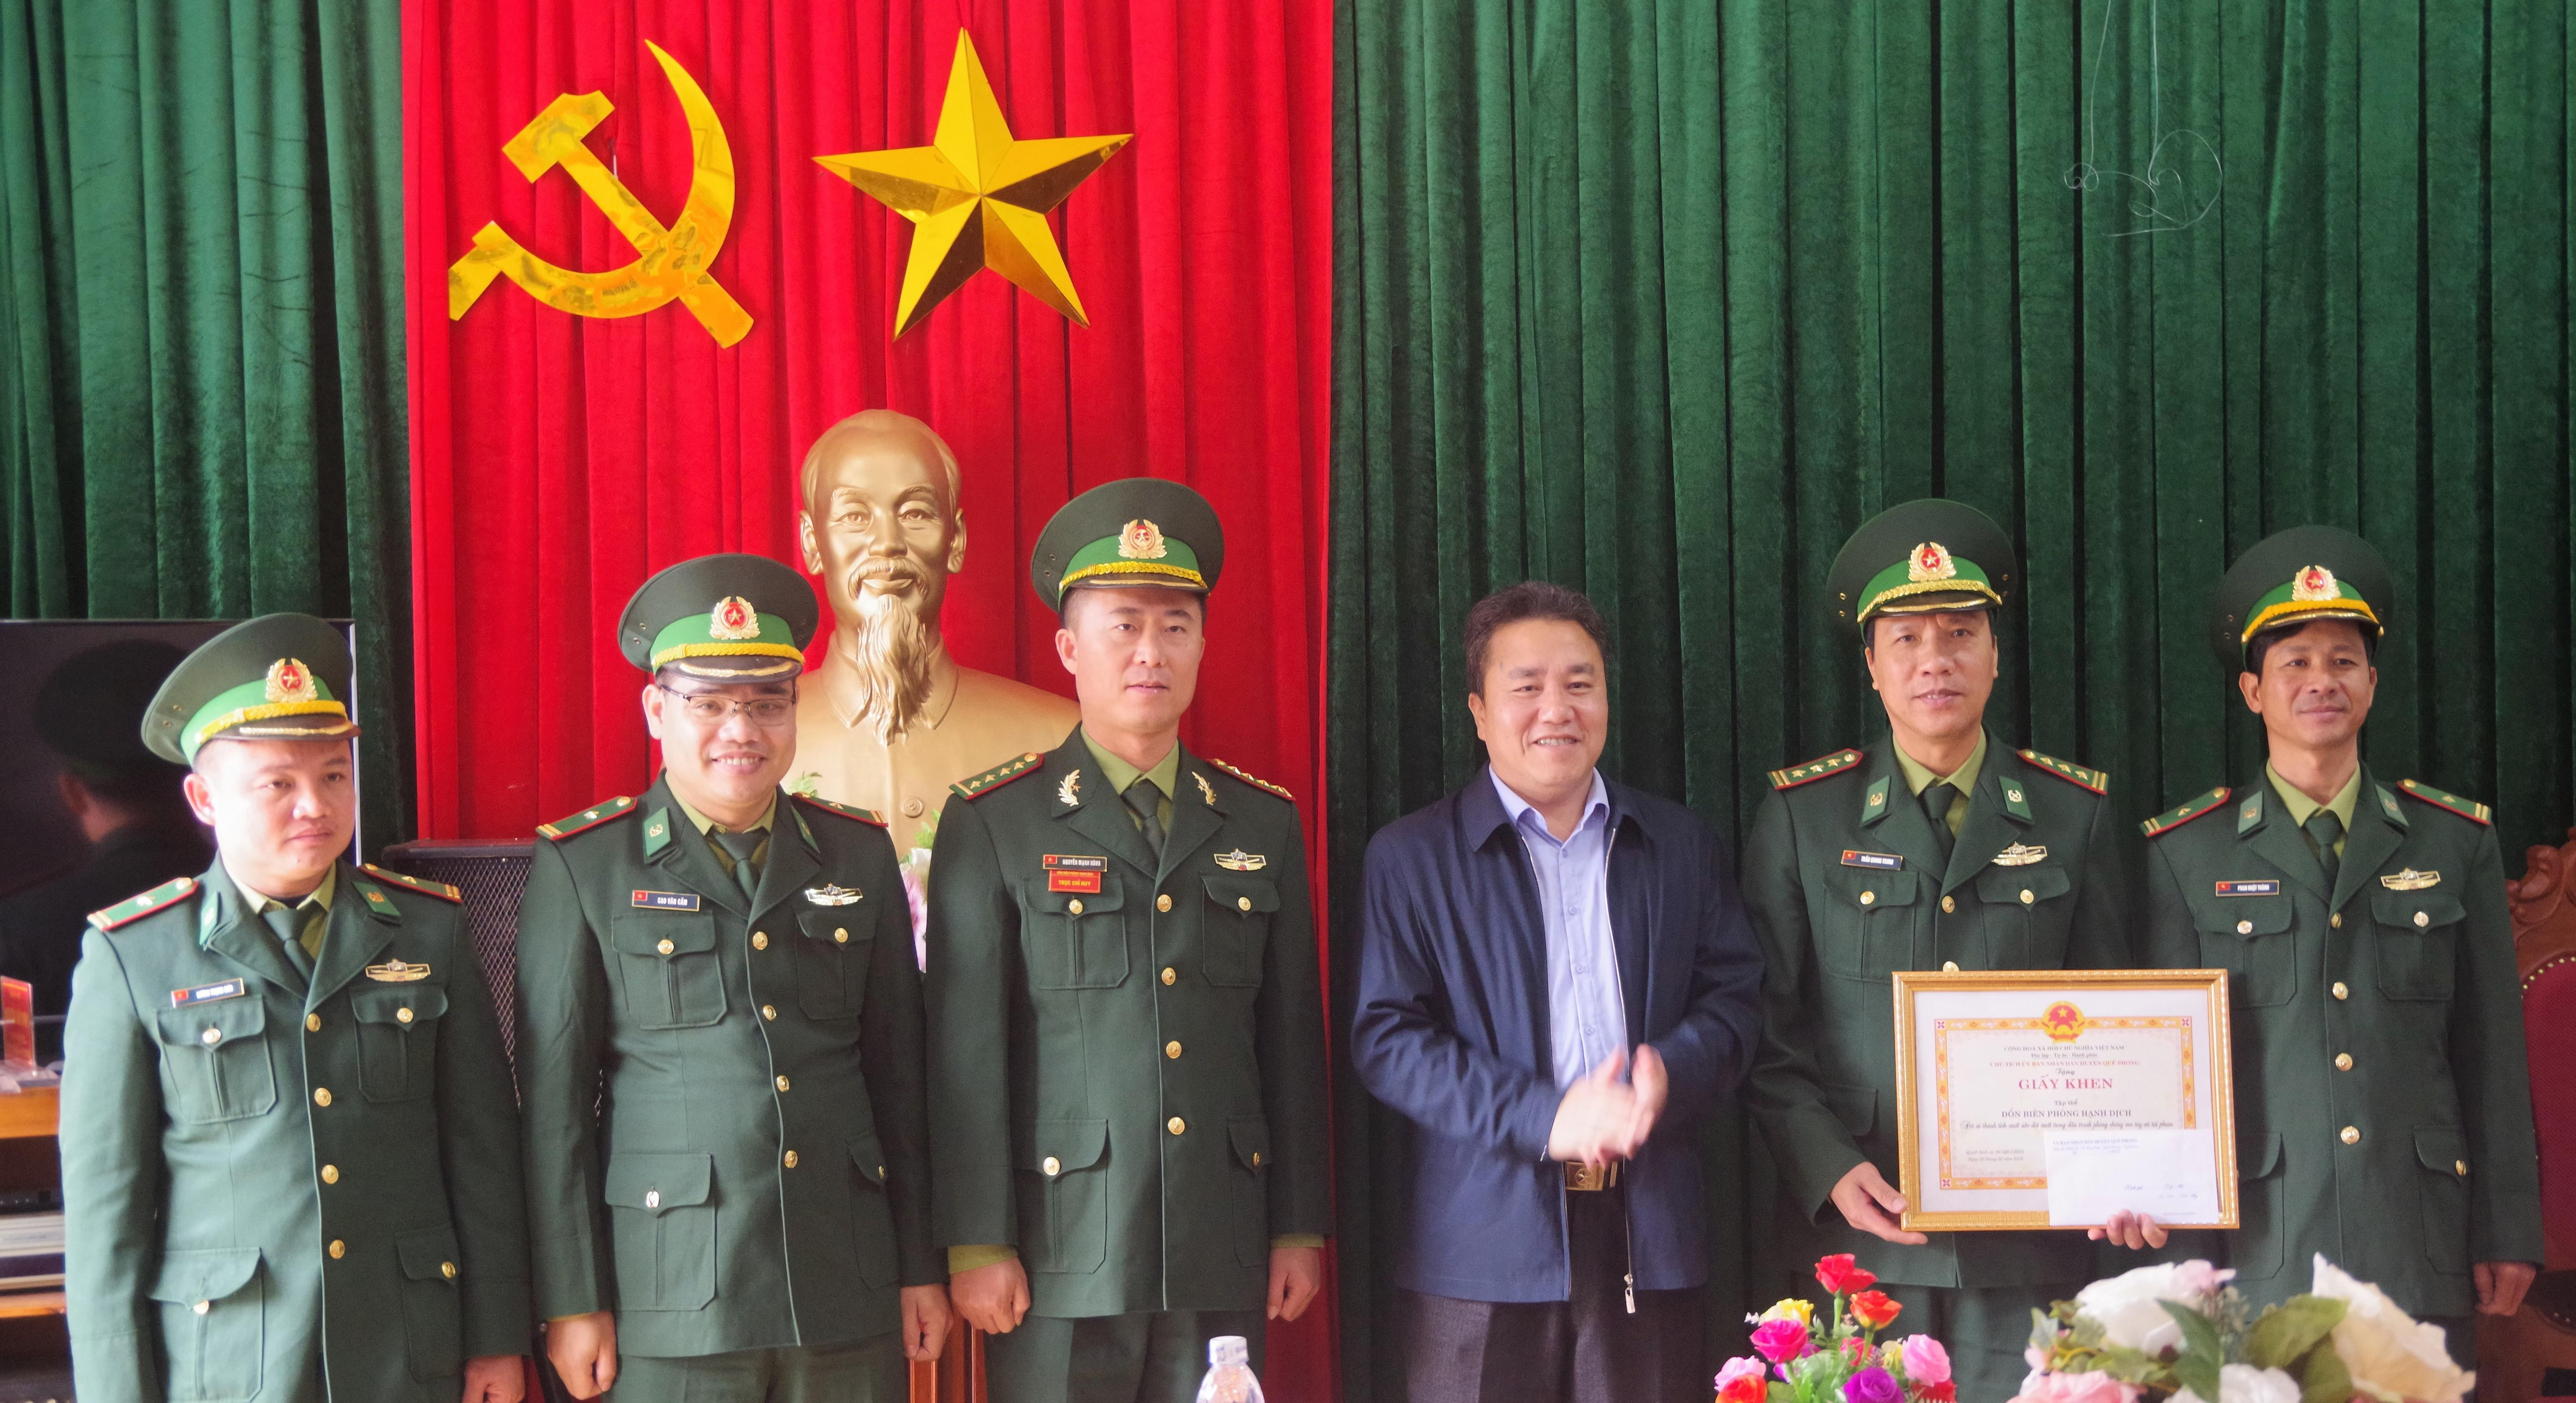 Đồng chí Lê Văn Giáp, Chủ tịch UBND huyện Quế Phong trao thưởng nóng cho Đồn Biên phòng Hạnh Dịch. Ảnh: Lê Thạch